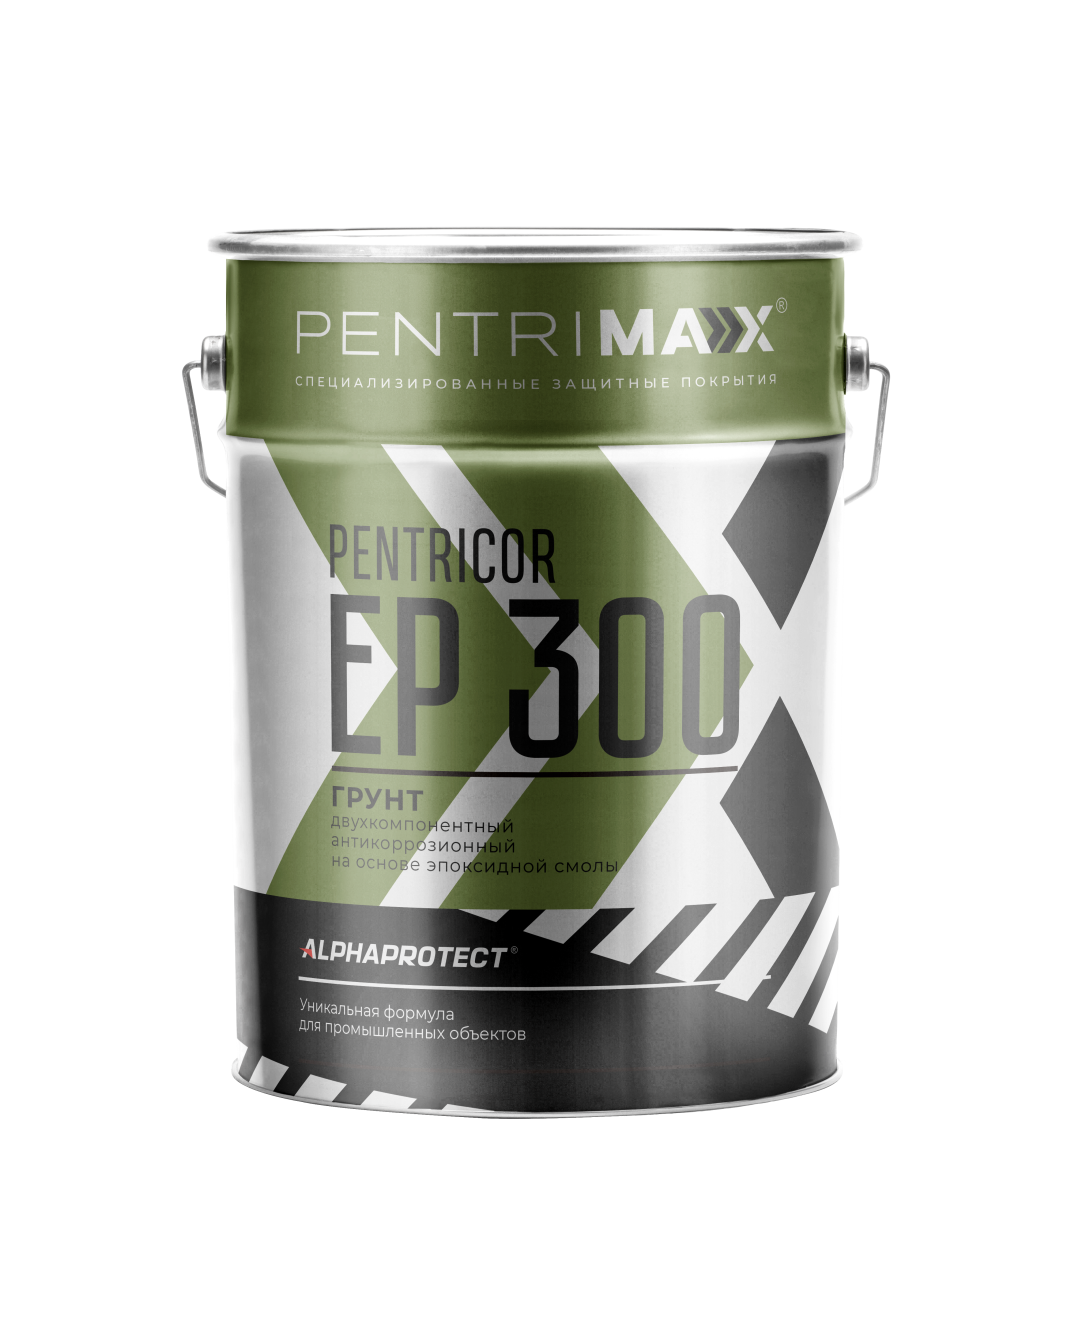 Эпоксидный грунт для бетона PENTRICOR EP 300